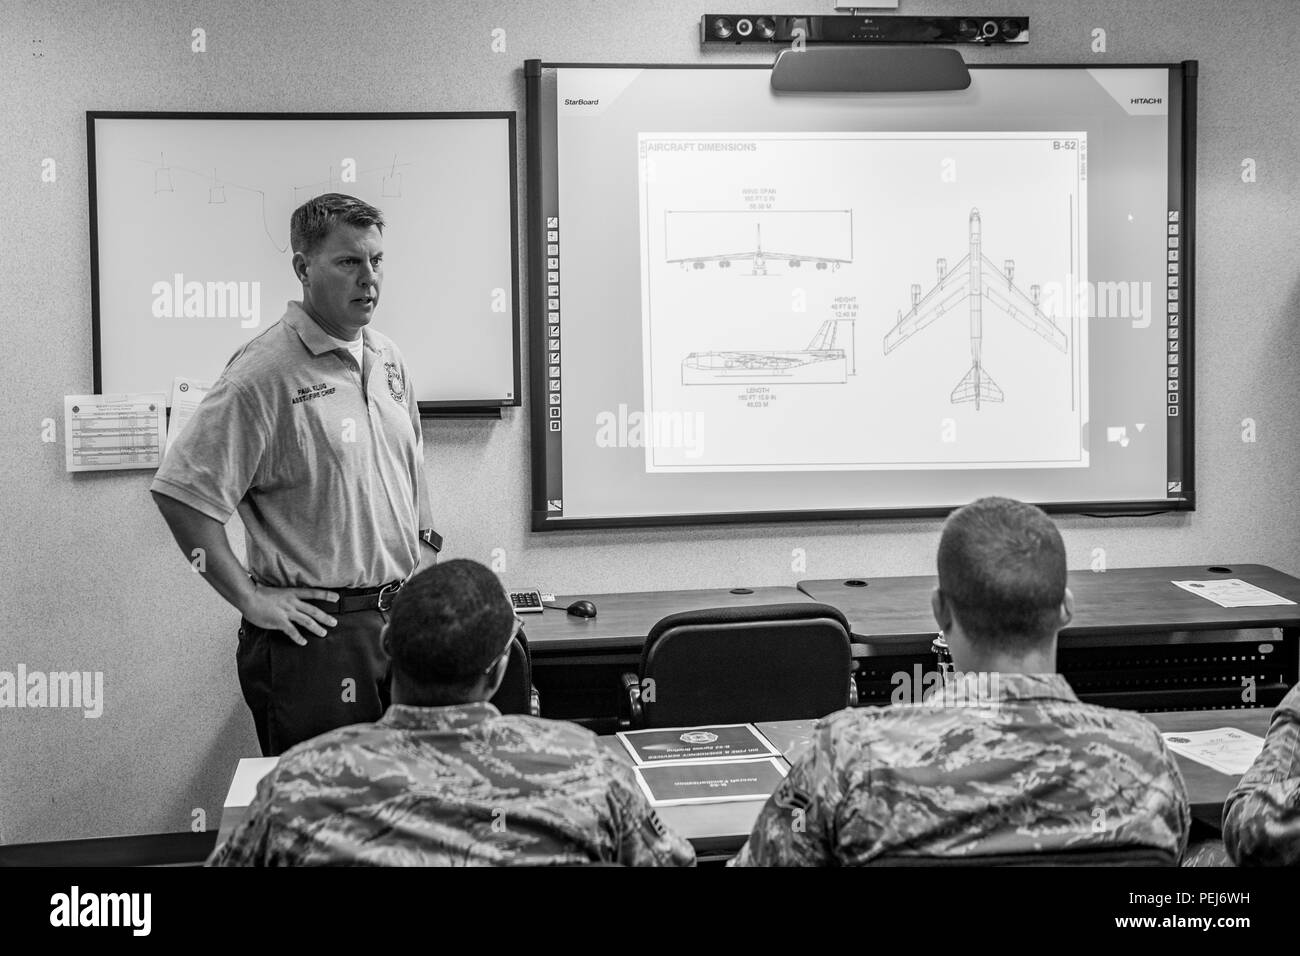 Paul Klug, 5e Escadron de génie civil sous-chef des pompiers pompiers rappelle à propos de la sécurité impliqués avec le B-52H Stratofortress avant un entraînement physique à Minot Air Force Base, N.D., le 28 août 2015. Le but de l'exercice était d'évaluer la capacité des pompiers à travailler en équipe pour arrêter l'appareil, éteindre un incendie moteur simulée et l'évacuer et traiter les deux victimes. (U.S. Air Force photo/ Navigant de première classe J. T. Armstrong) Banque D'Images